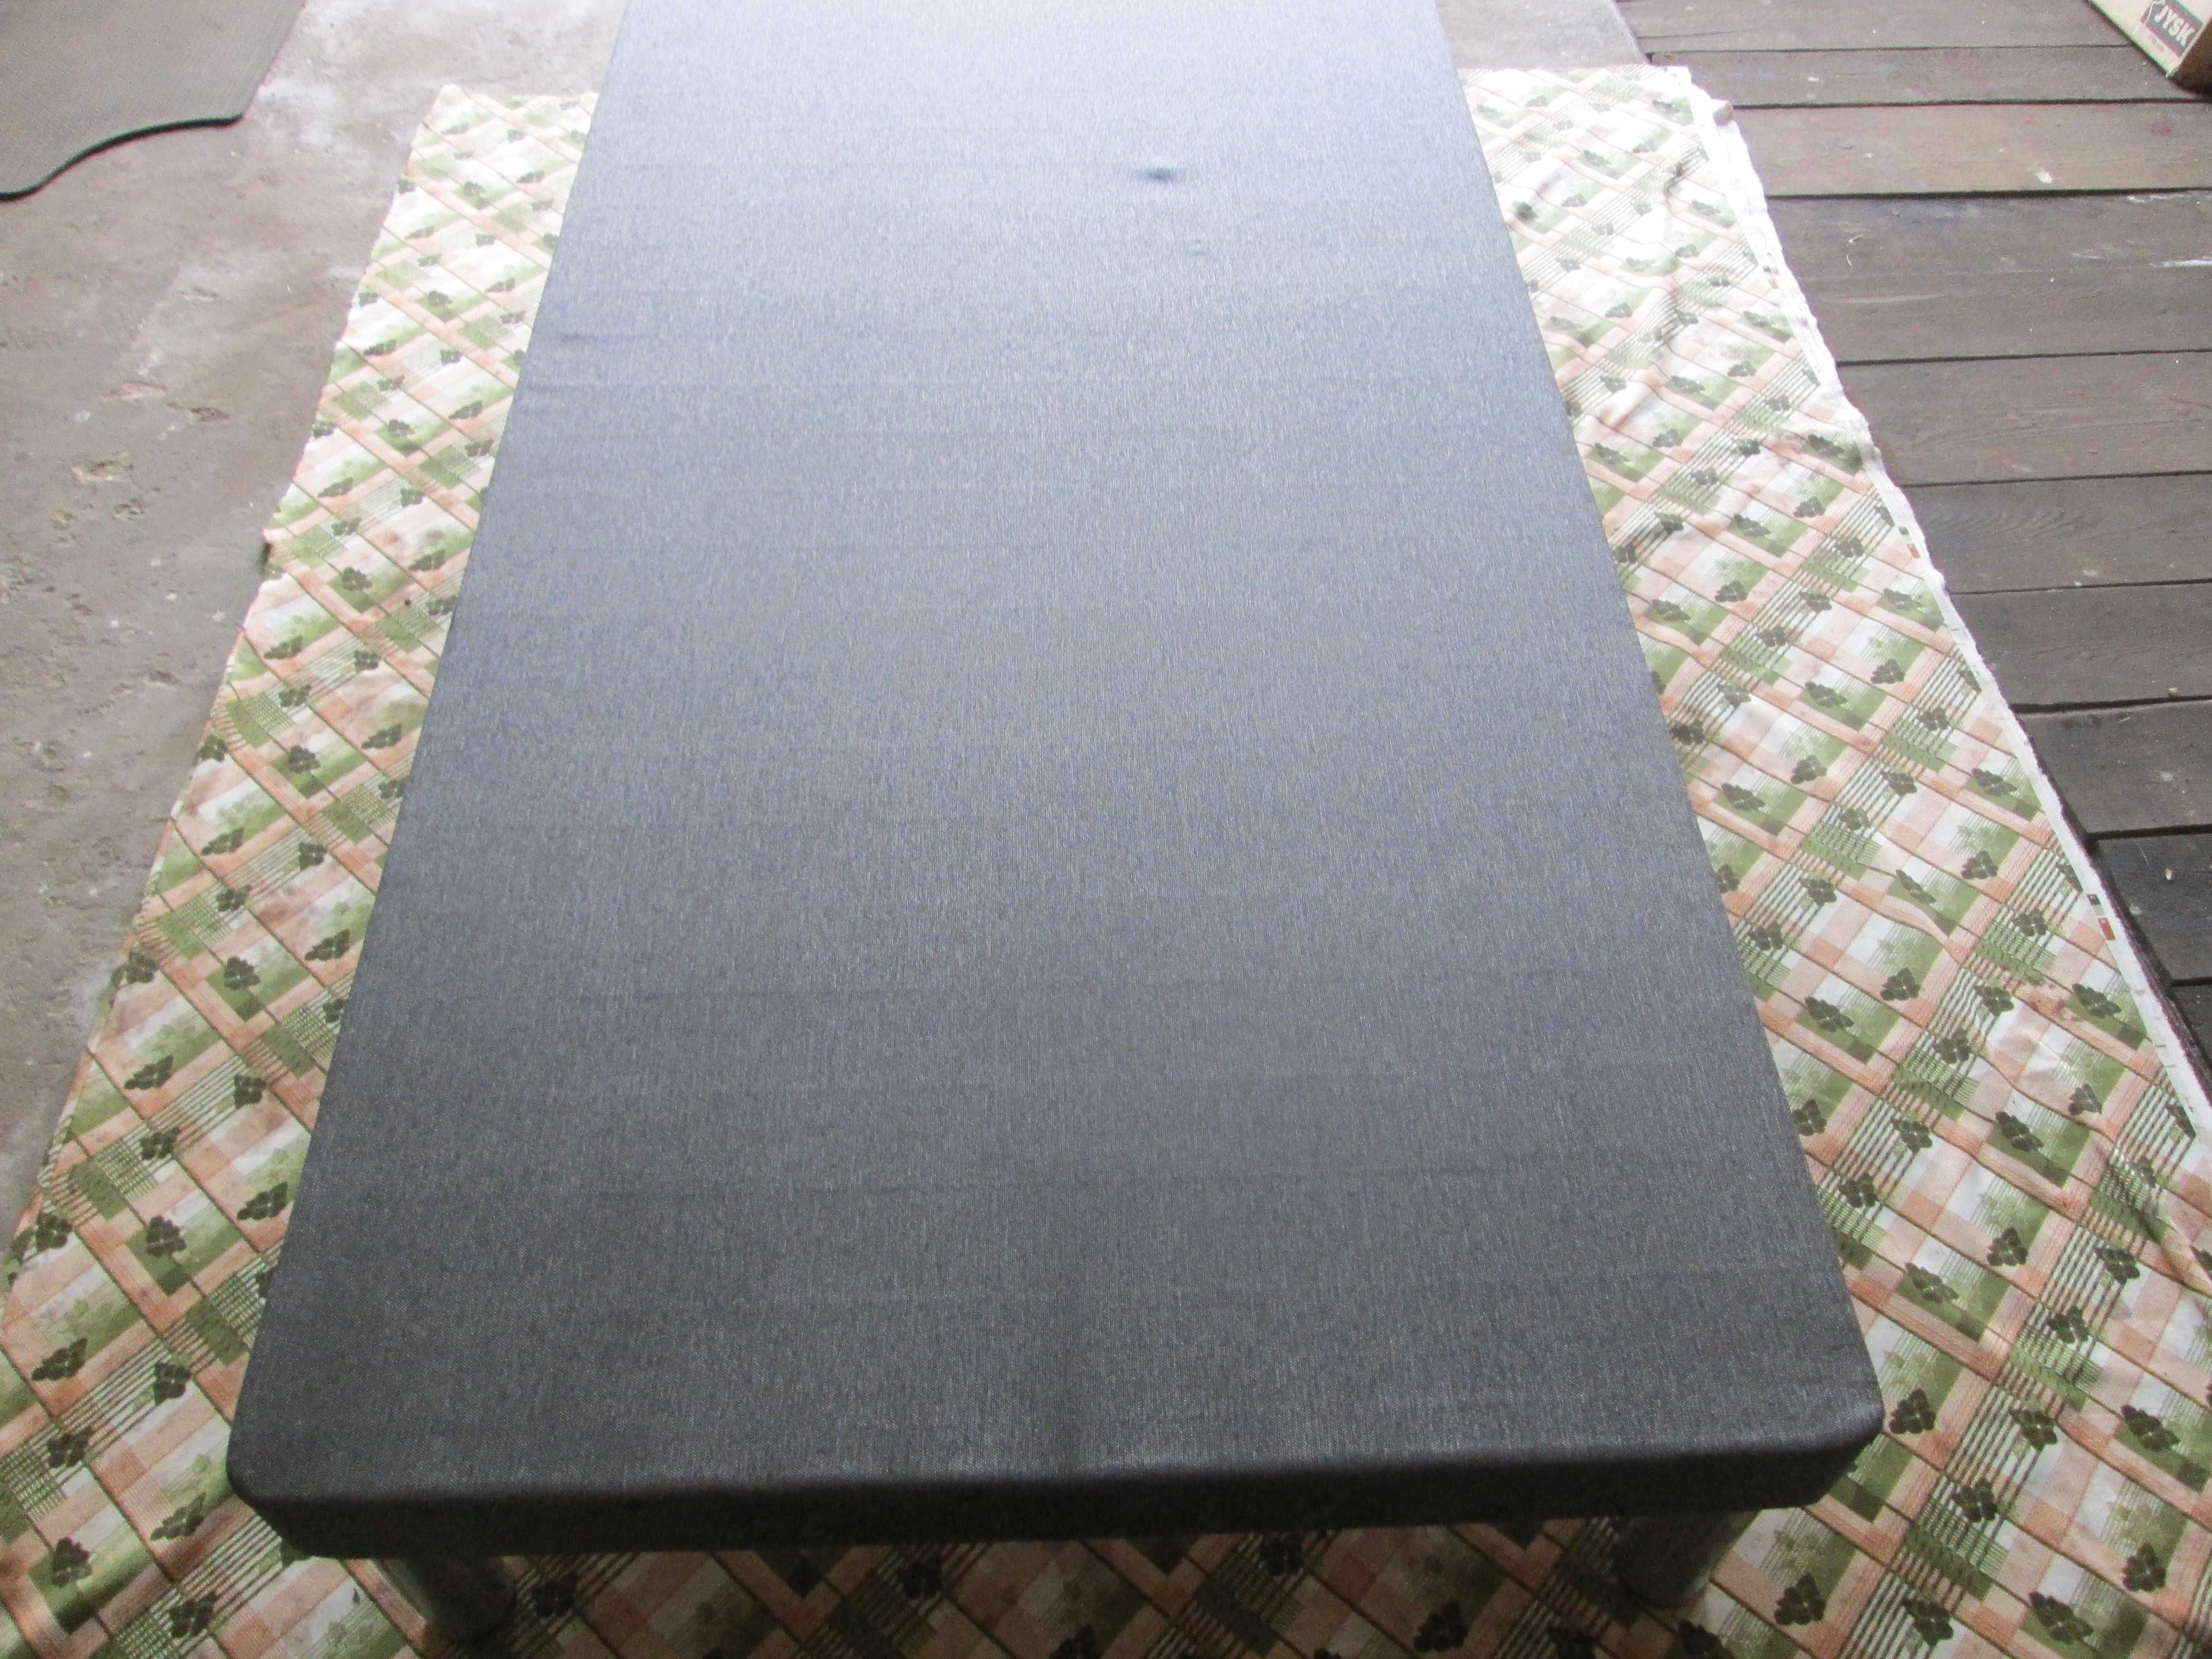 Podstawa łóżka o wymiarach (200 x 90 x 32) cm